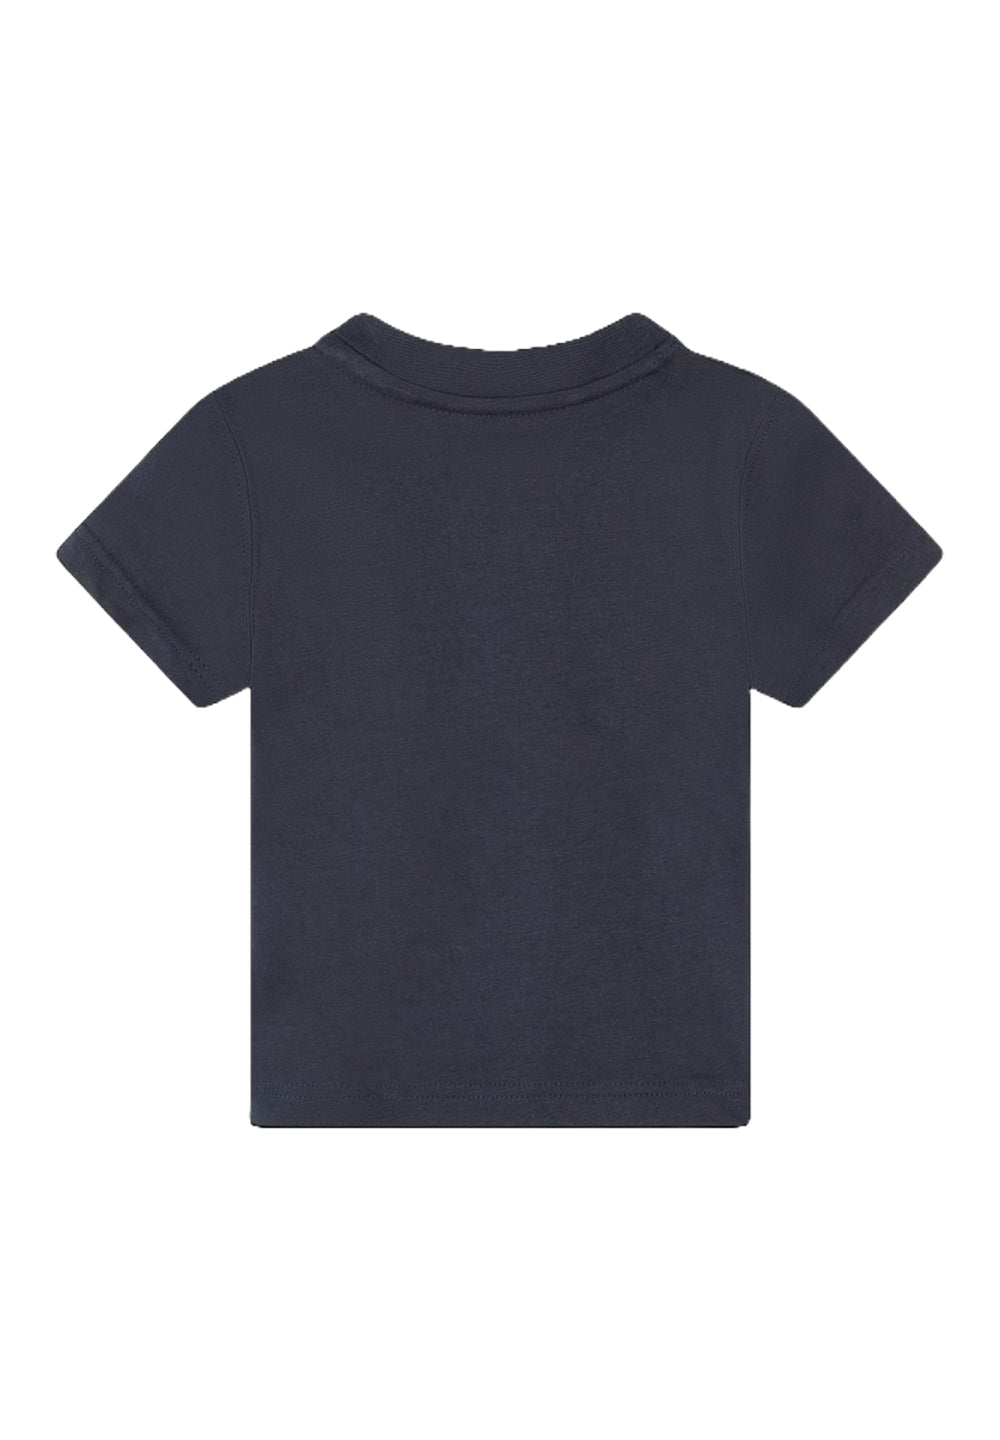 Blue t-shirt for newborn